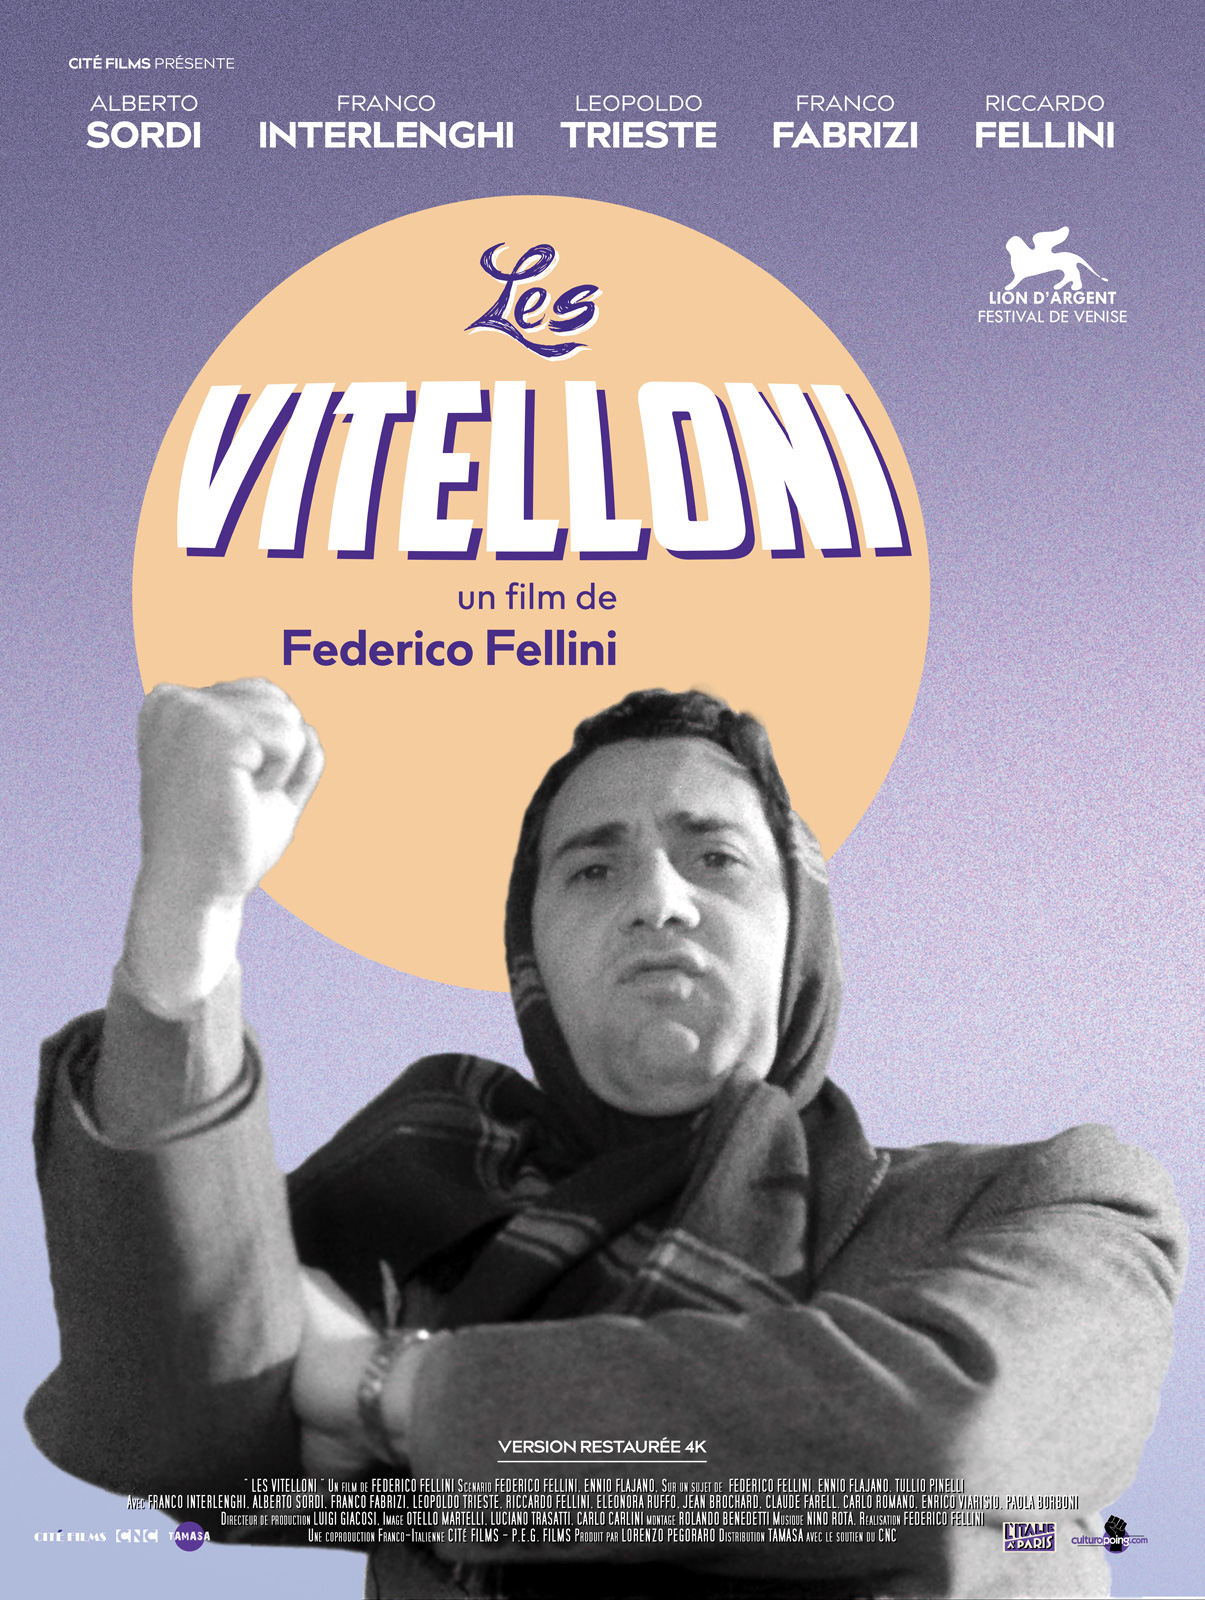 Les Vitelloni streaming vf gratuit